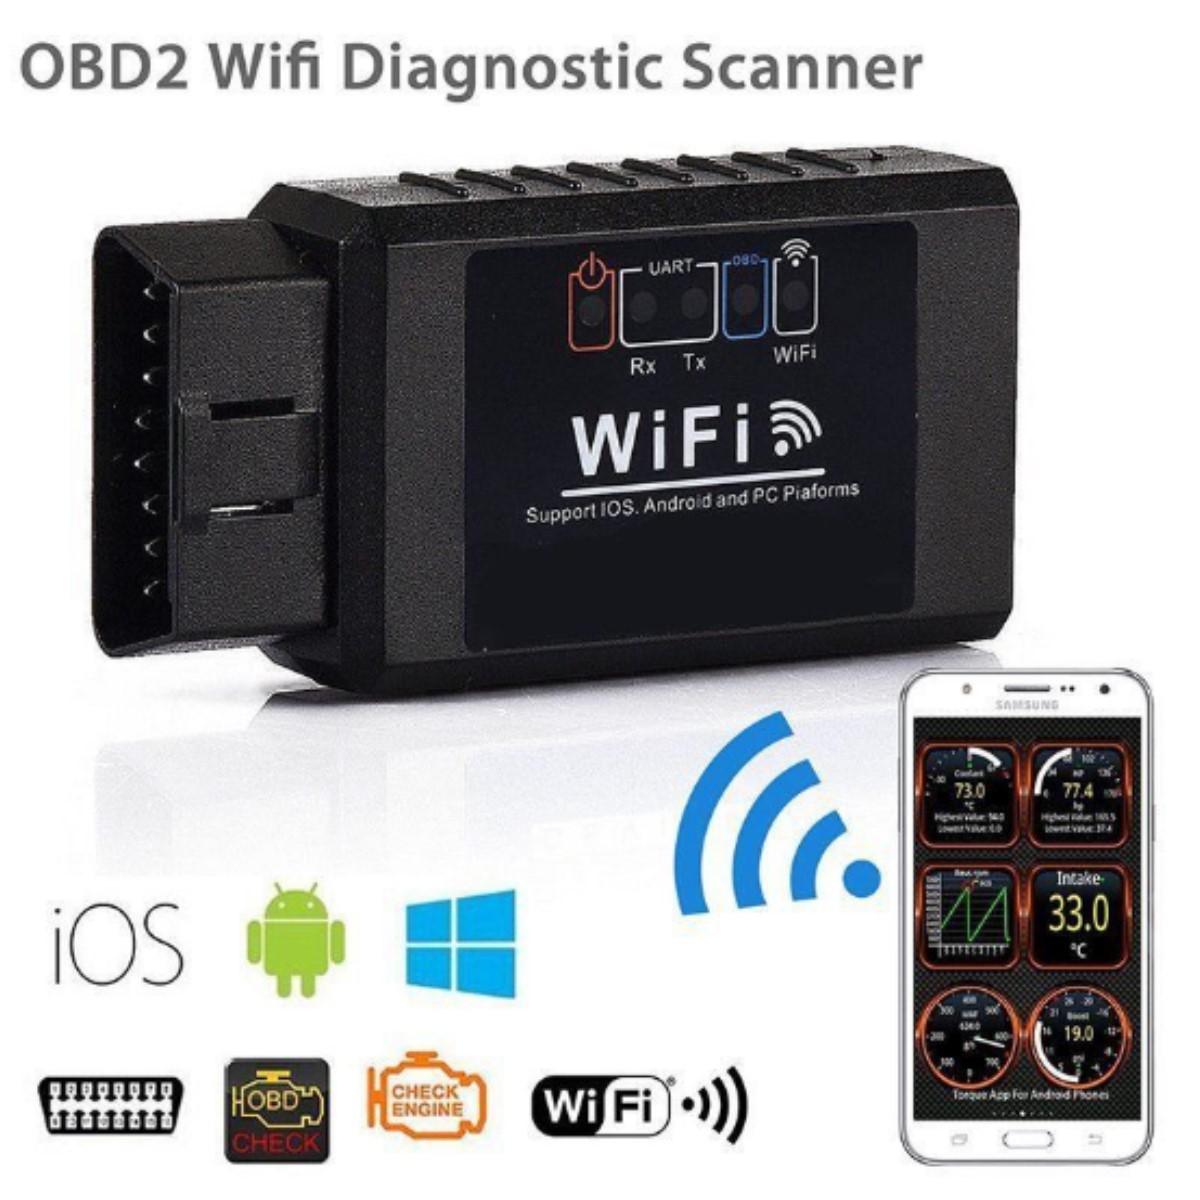 Thiết bị OBD 2 kết nối Wifi quản lý thông tin động cơ xe hơi trên điện  thoại di động | Lazada.vn